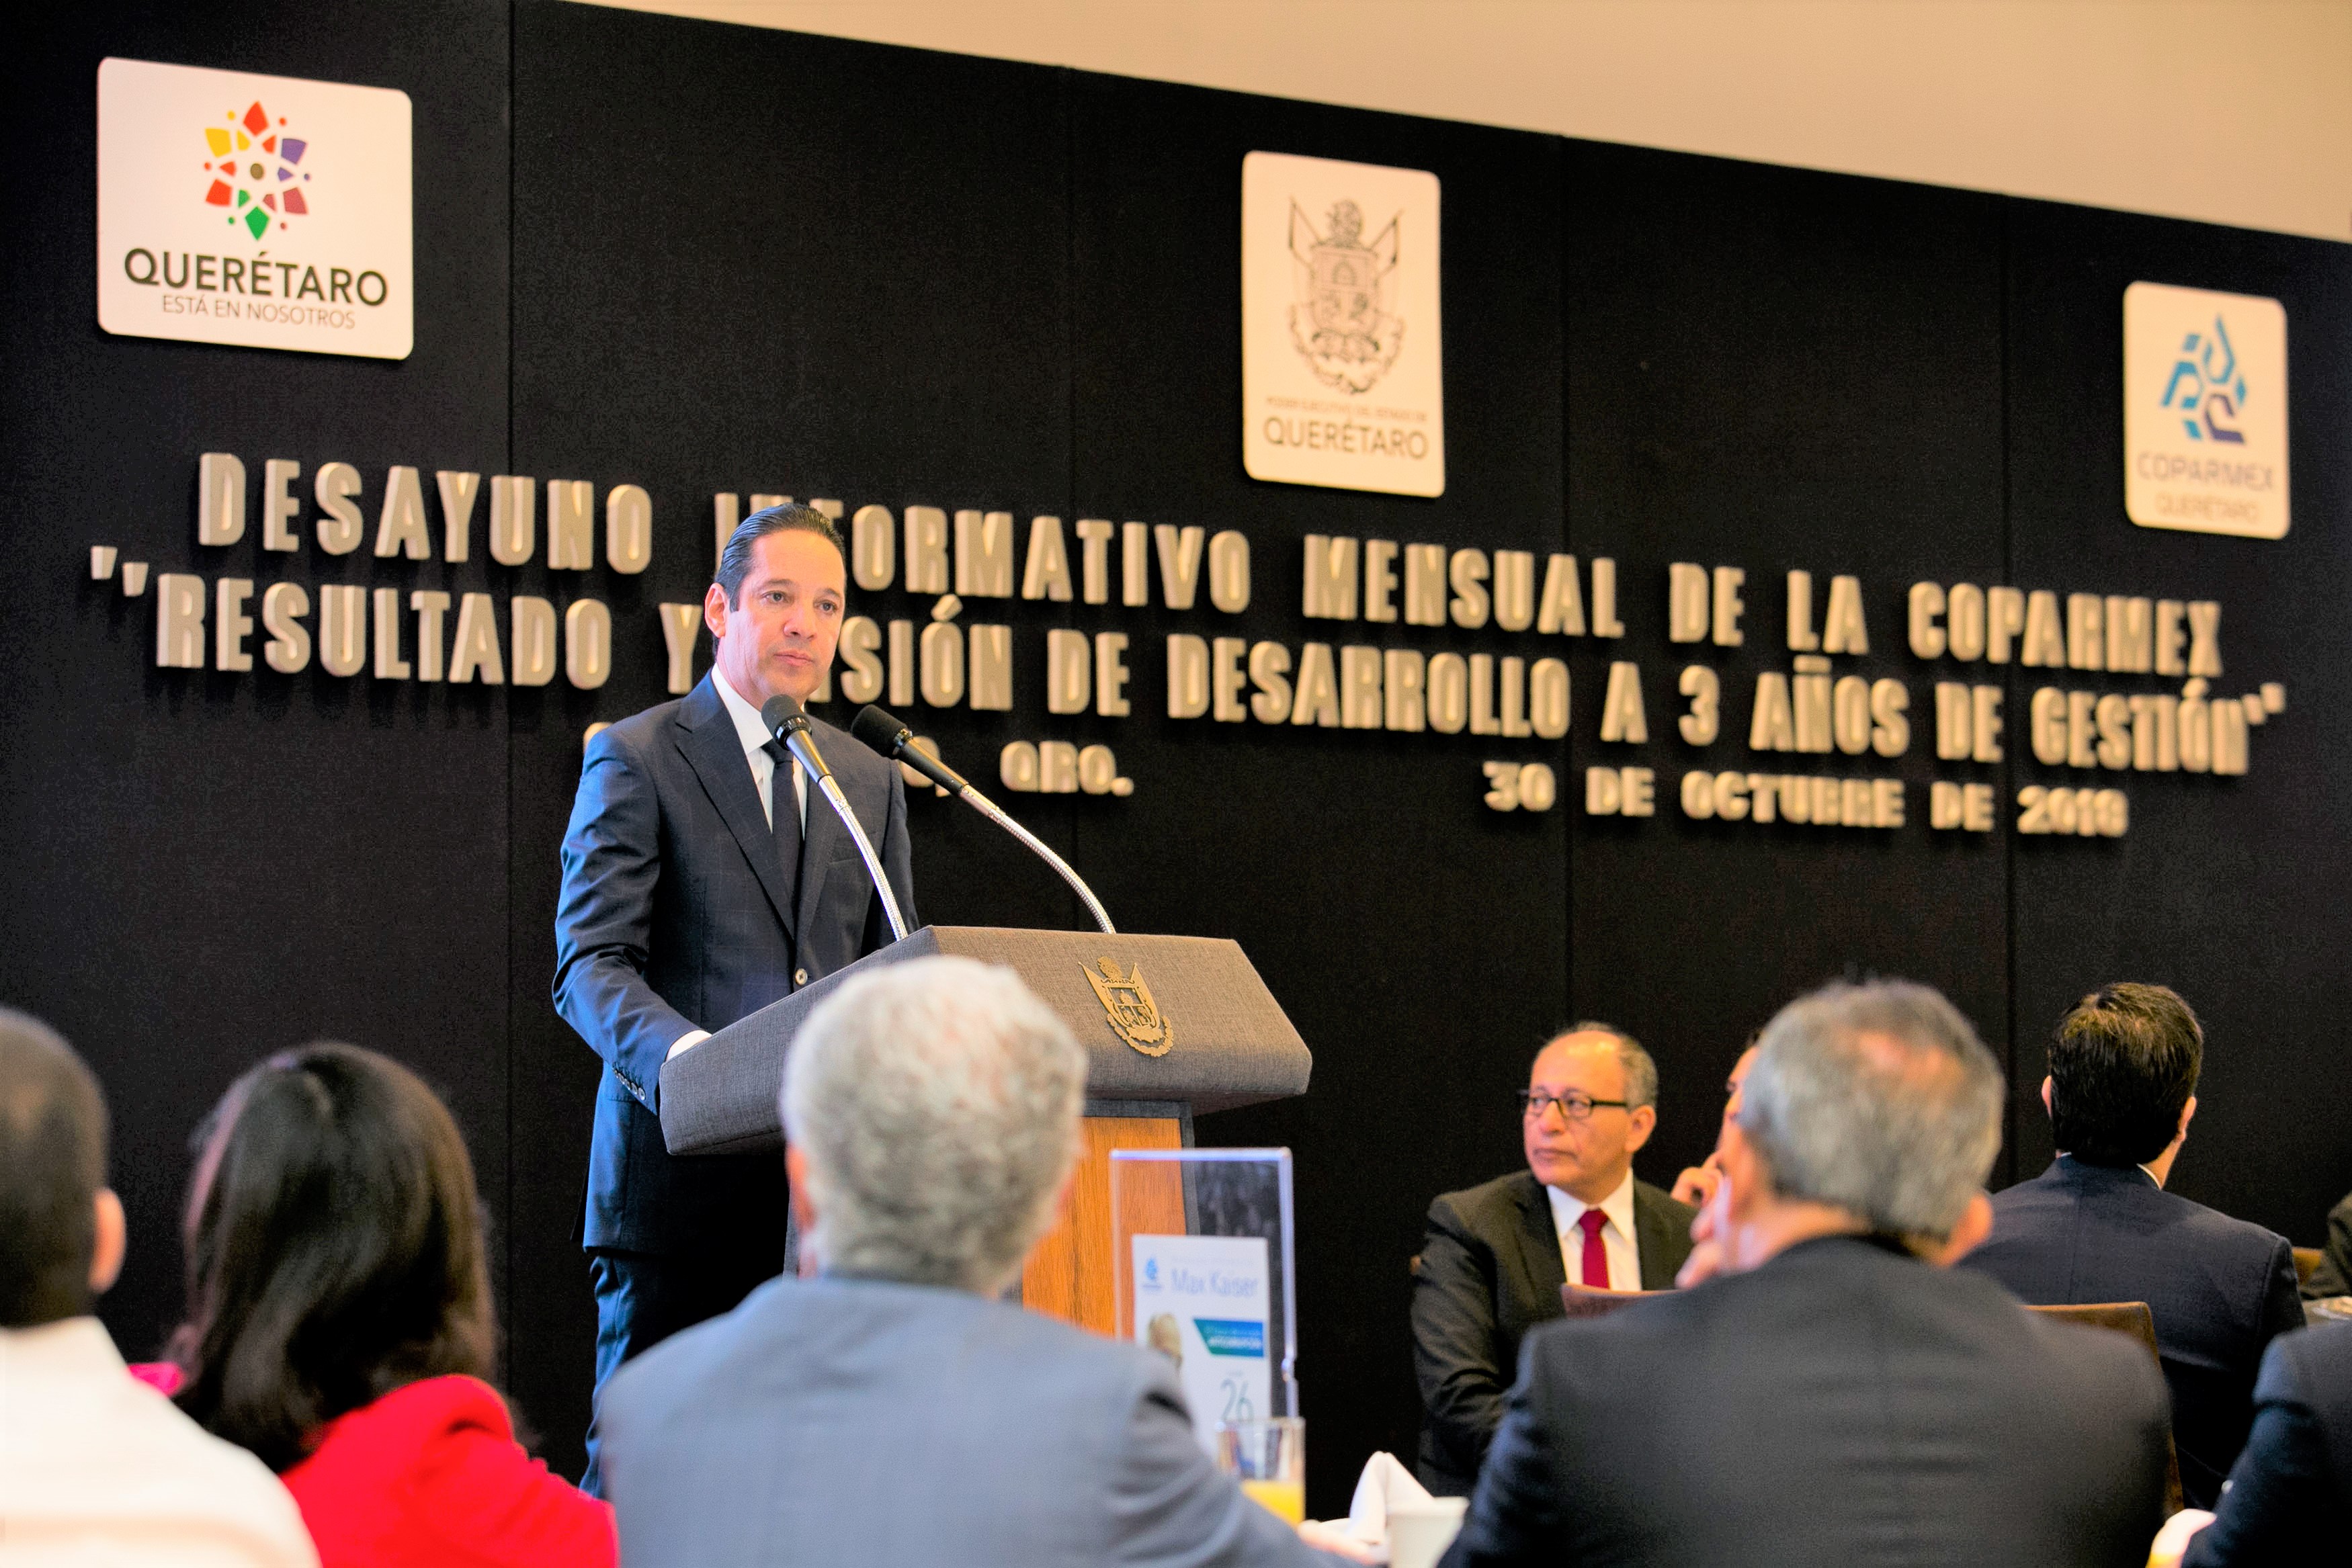 Querétaro es el estado con más potencial económico en Latinoamérica.